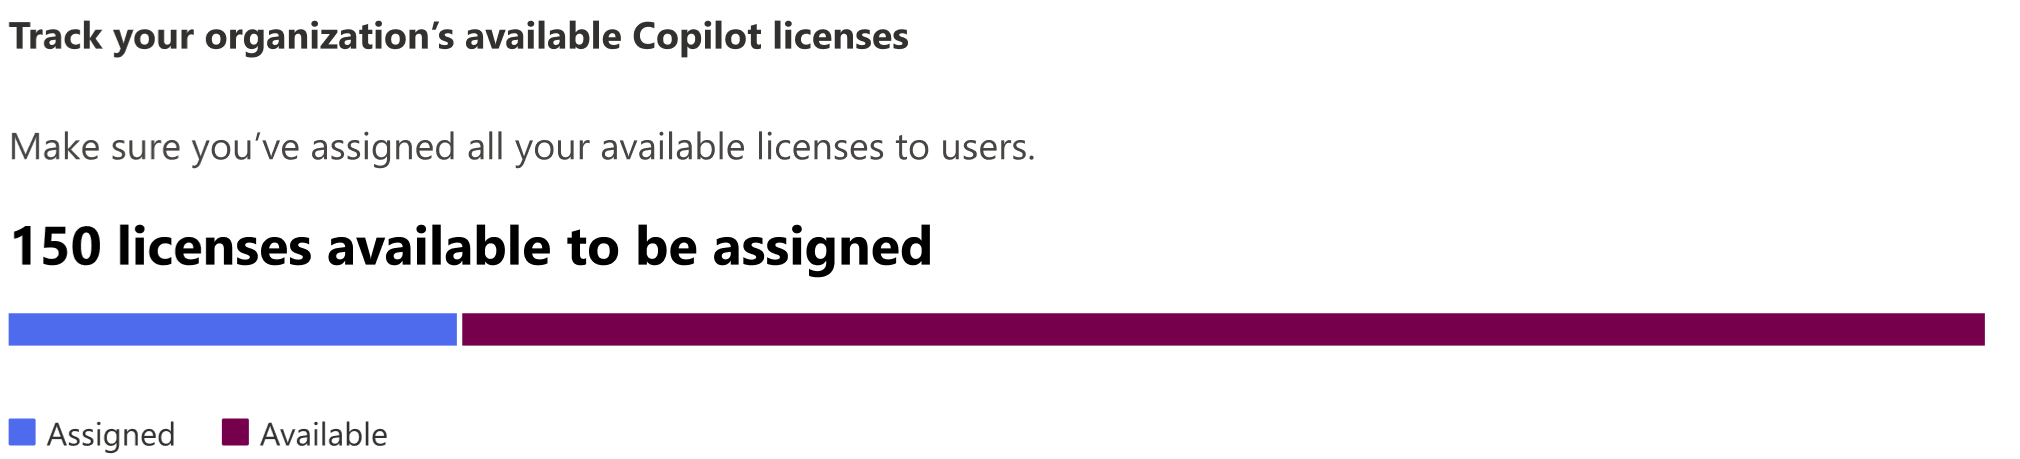 Capture d’écran montrant le nombre de licences disponibles d’un organization à attribuer.